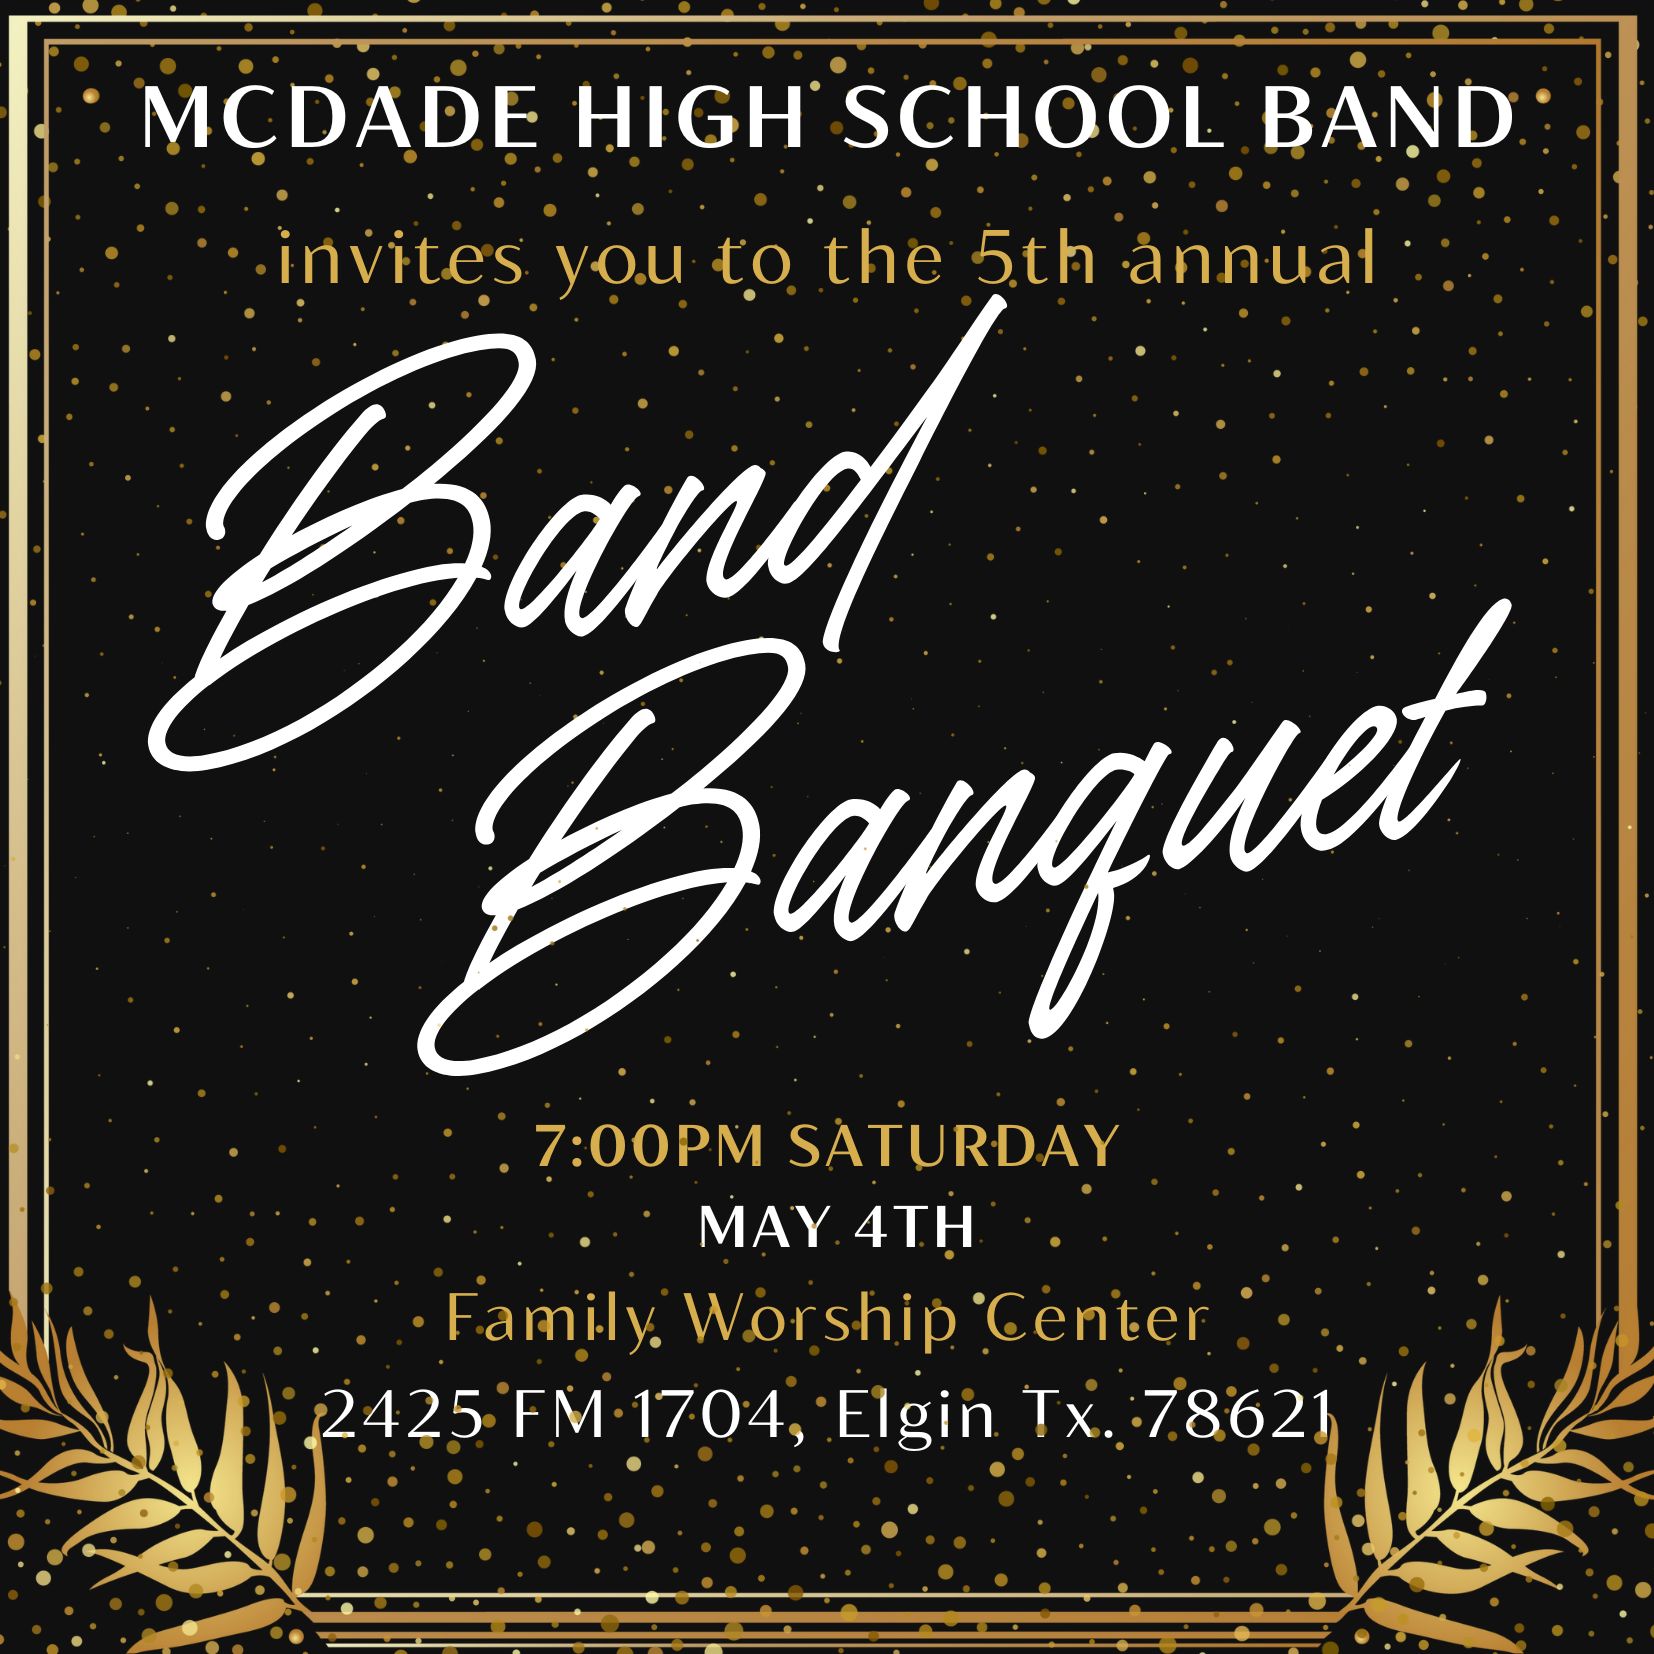 Band Banquet info